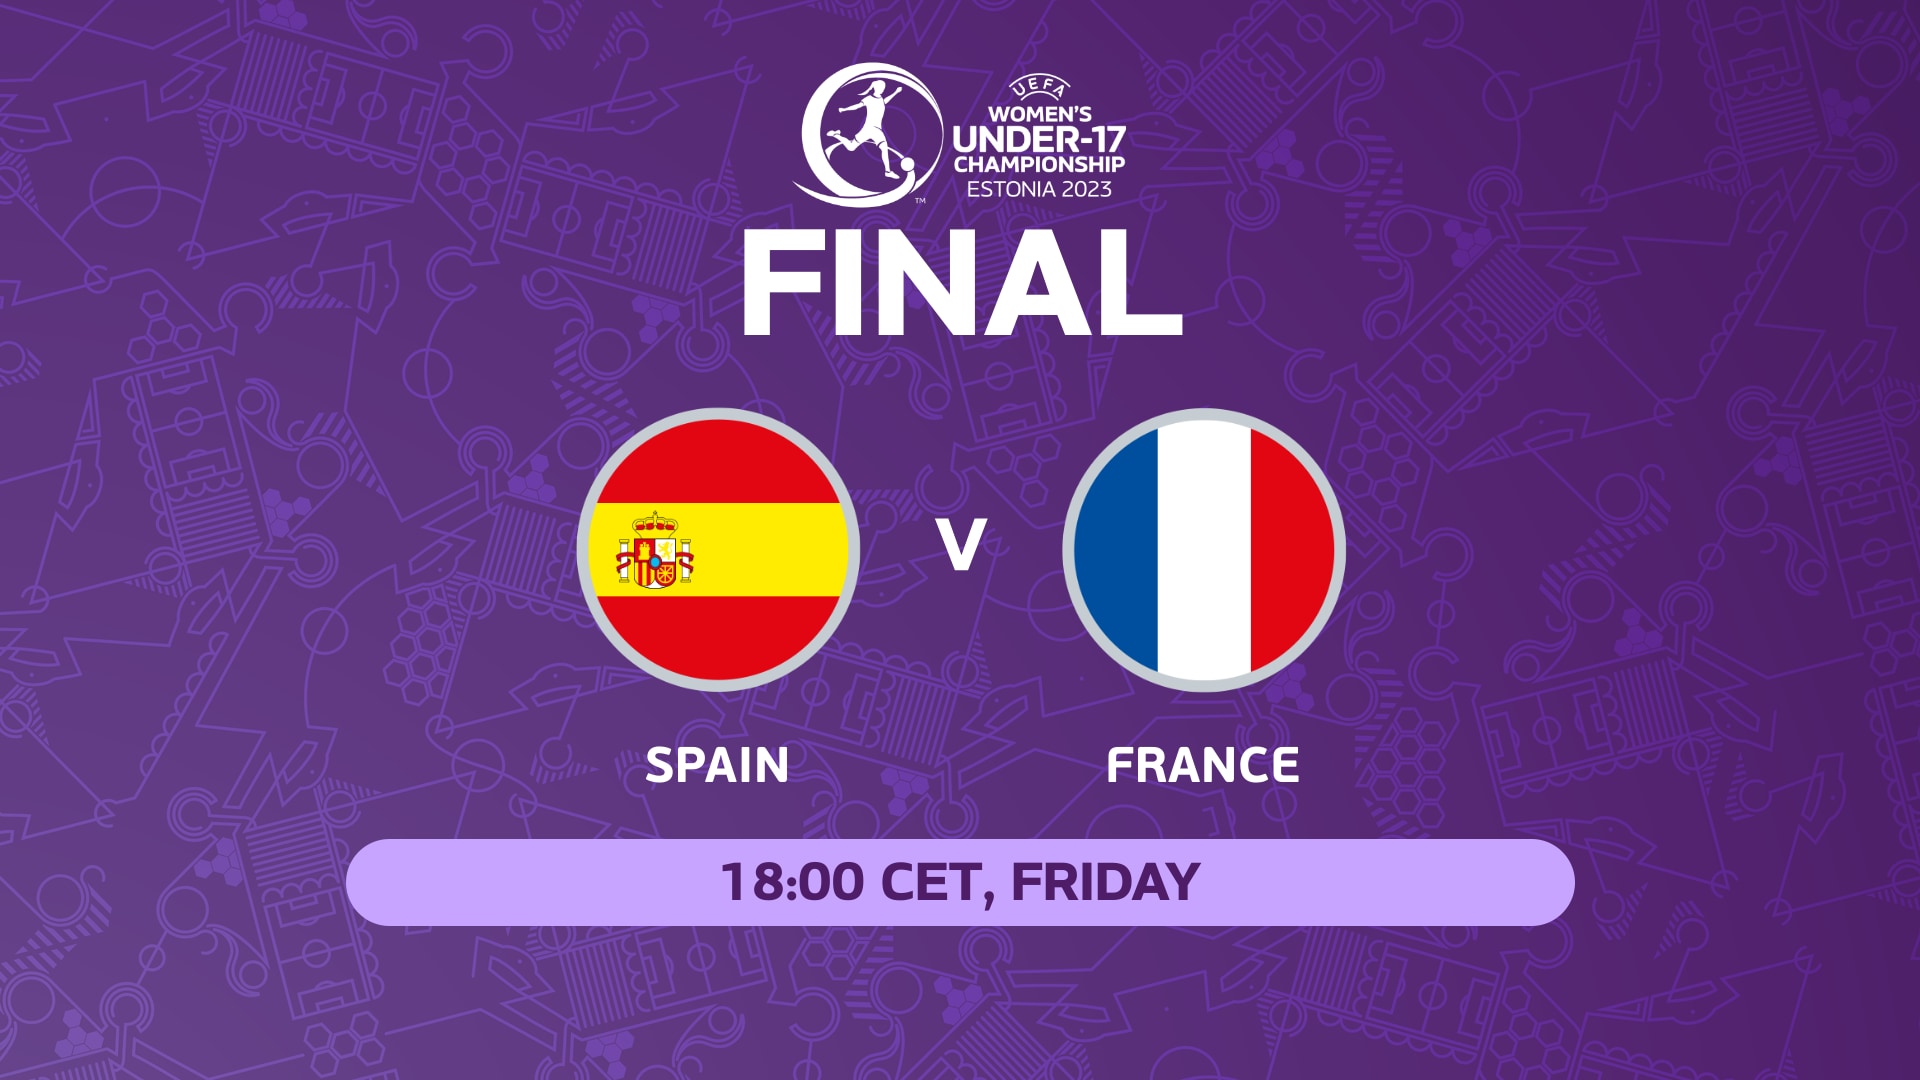 Découvrez les finalistes du Championnat féminin des moins de 17 ans de l’UEFA Euro 2023 : Espagne contre France |  Femmes de moins de 17 ans